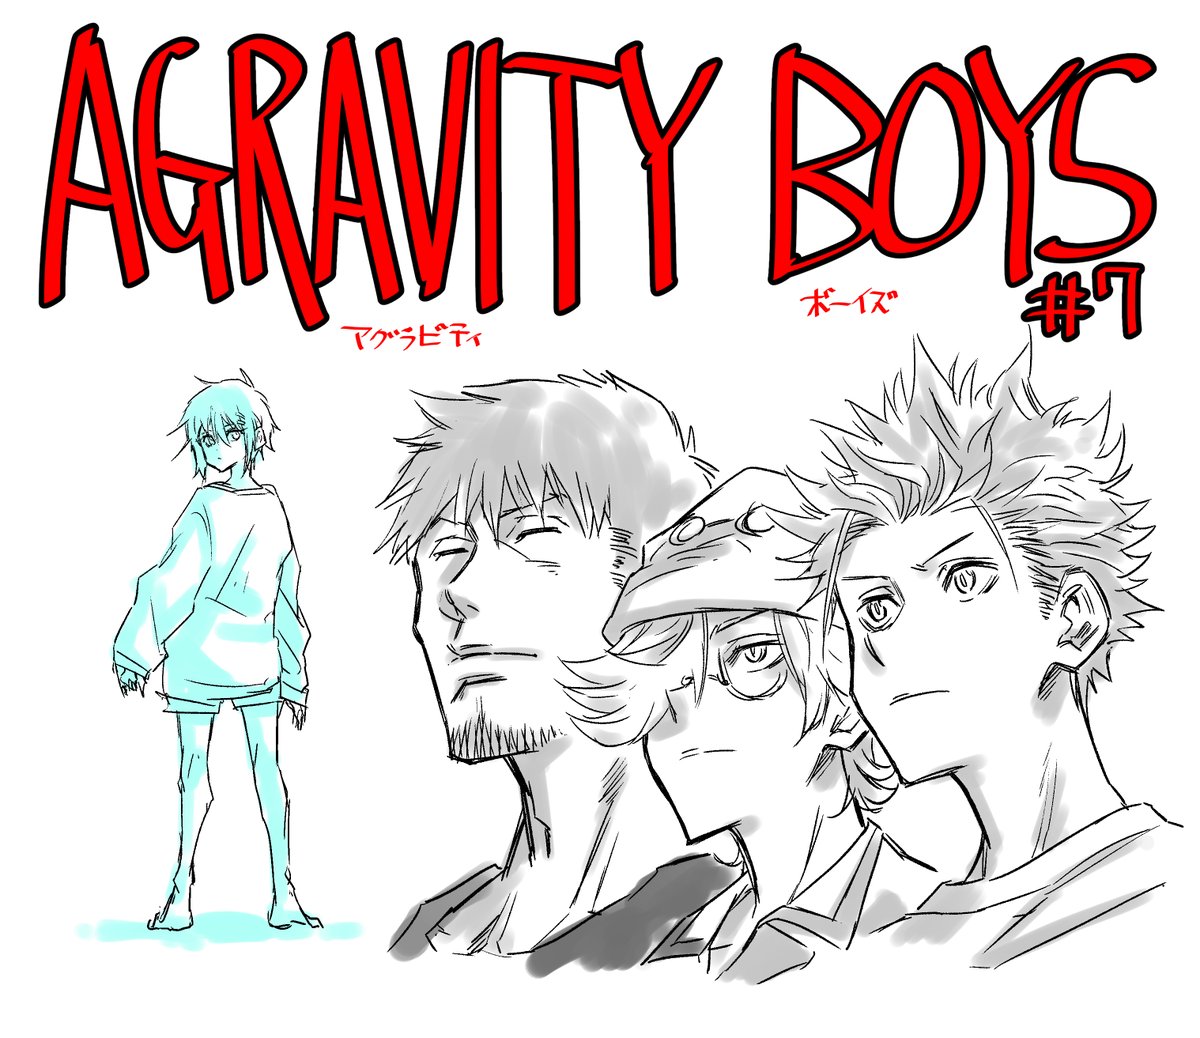 今週発売の週刊少年ジャンプ10号に
「AGRAVITY BOYS」7話載ってます!
よろしくお願いします!
やっと4人が違う服着てくれて作者的にありがたかったです! 